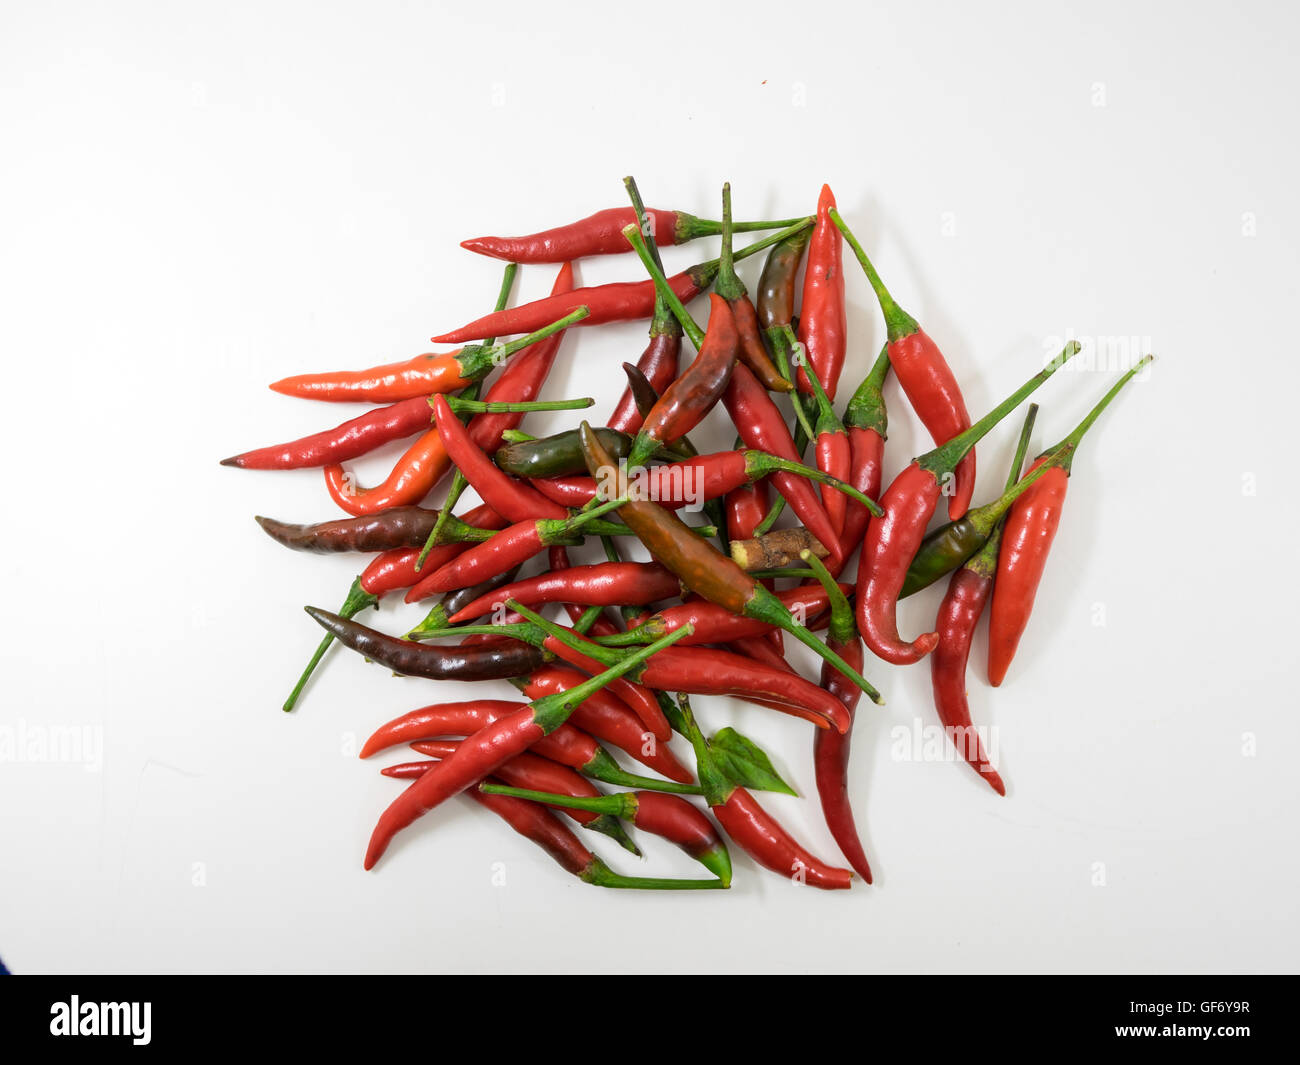 Plantes médicinales Herbes alimentaire piment ingrédients assaisonnement épices aromatisantes poivre de guinée Banque D'Images